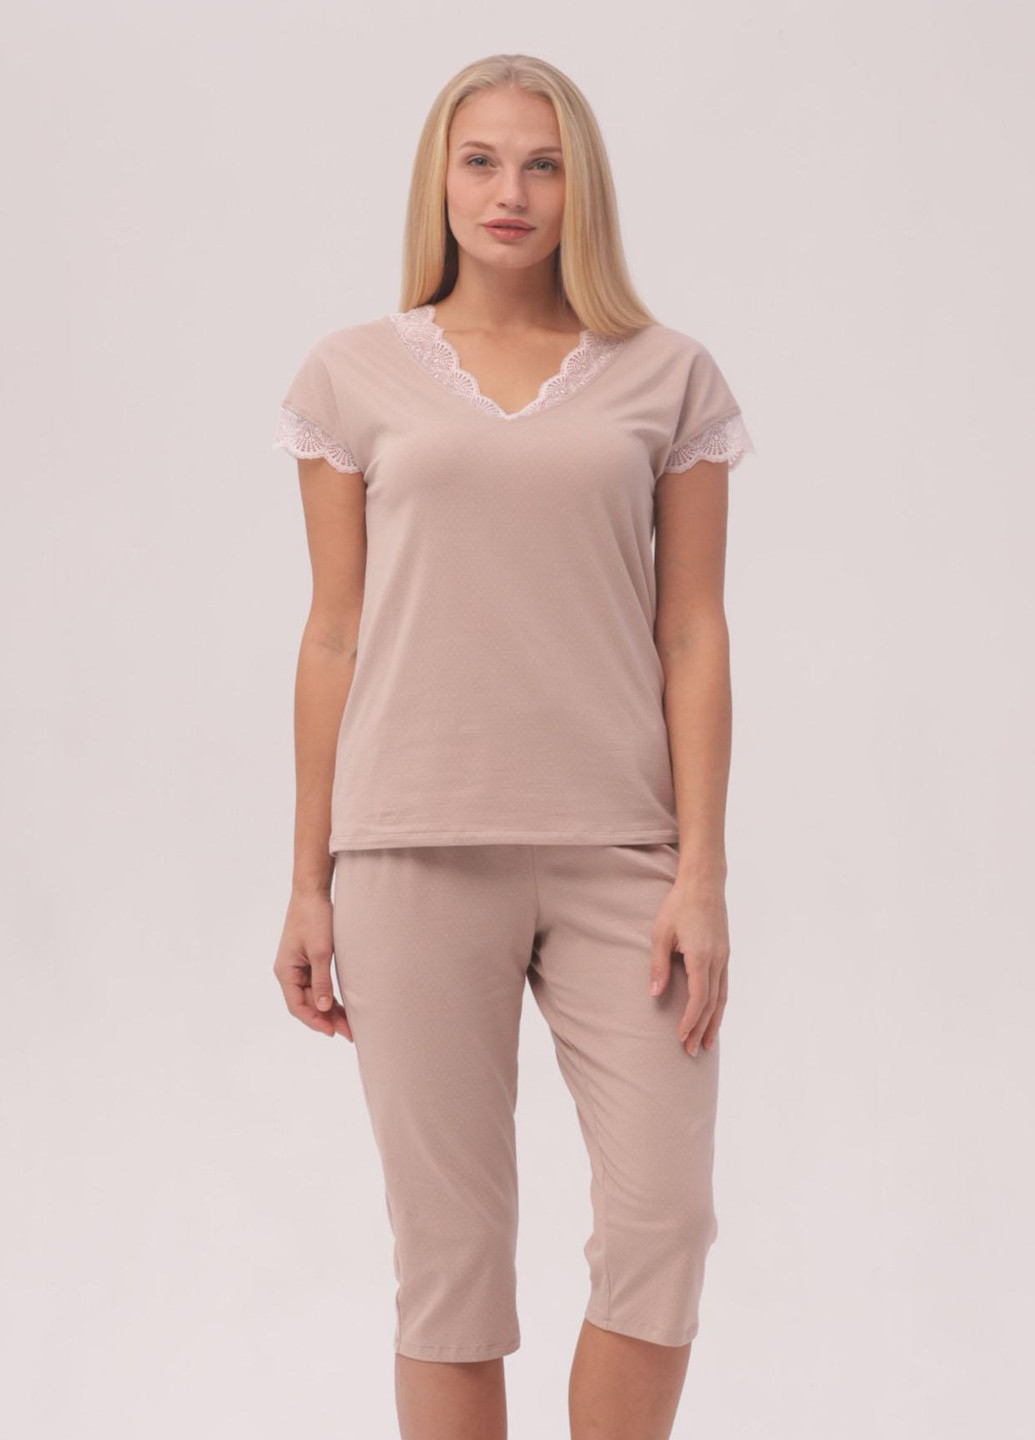 Розовая всесезон женская пижама aurelia футболка + бриджи Roksana